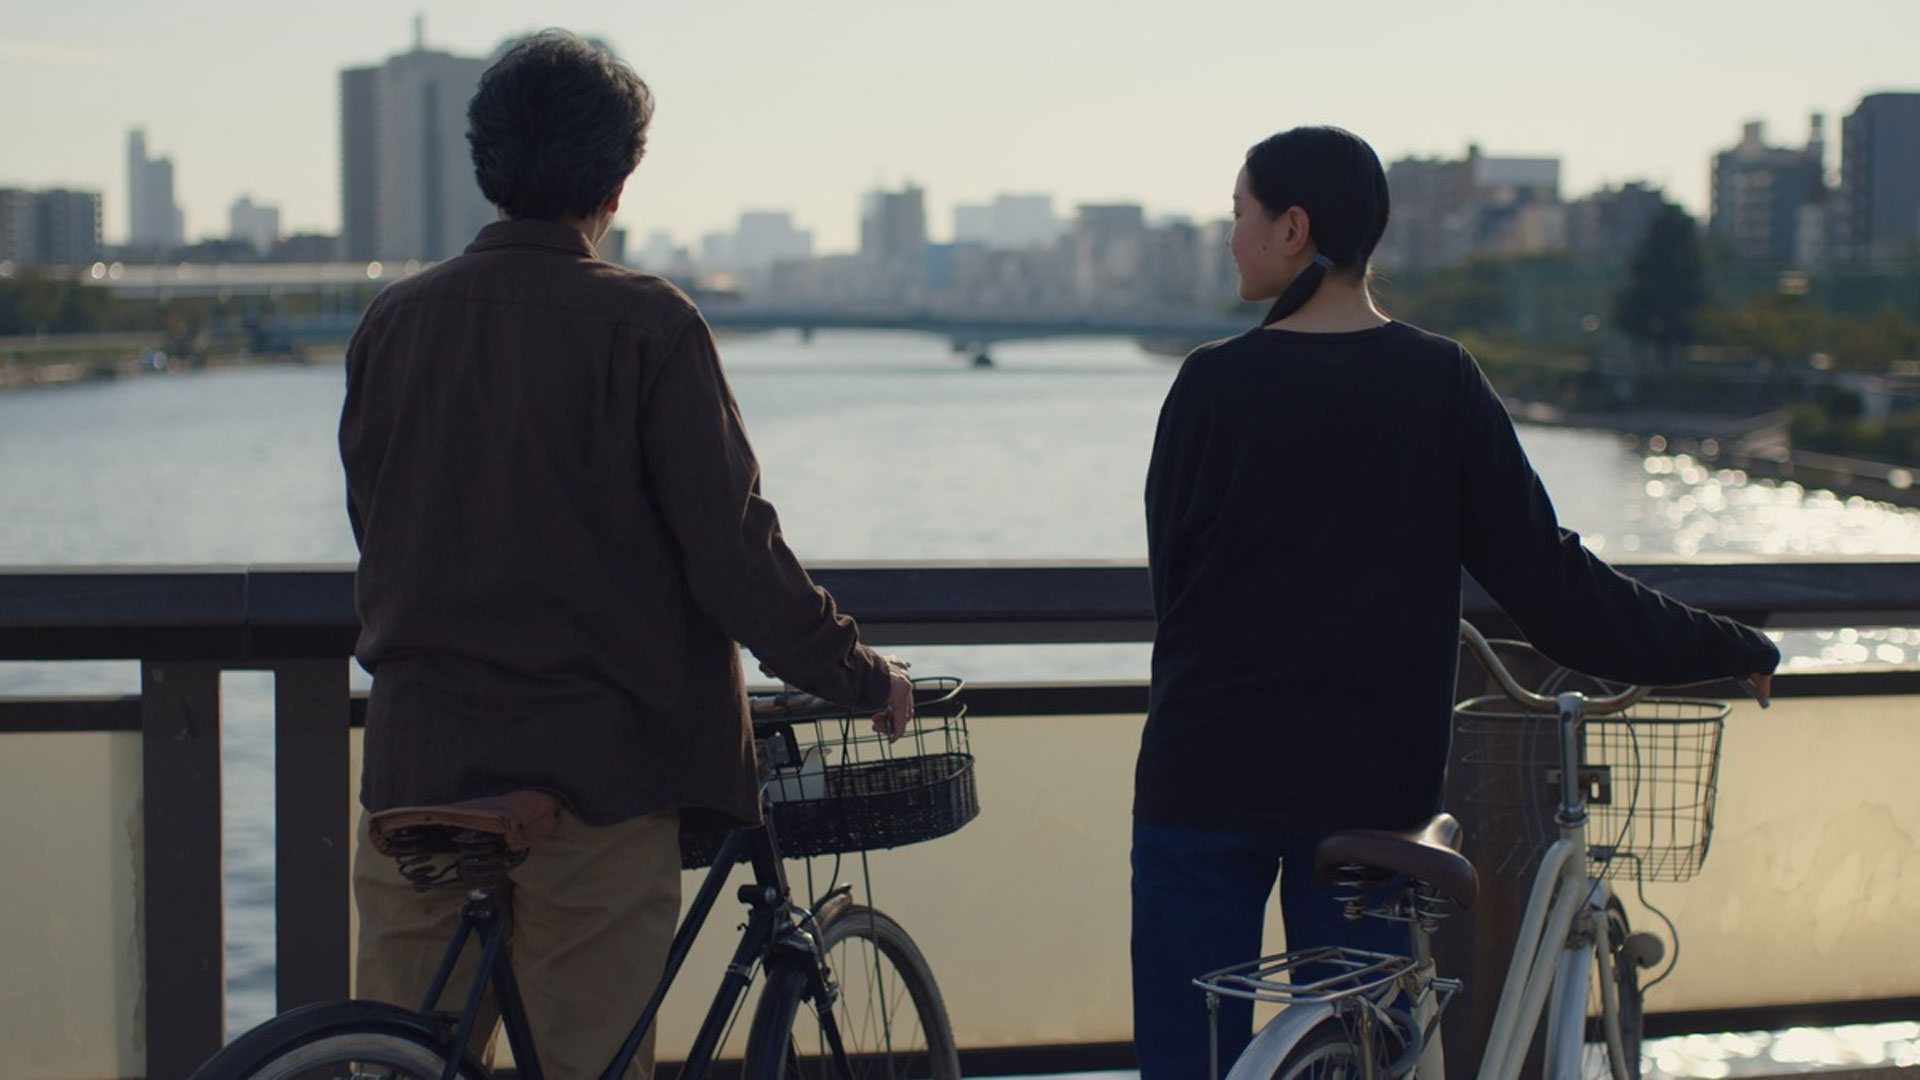 یک پیرمرد و یک دختر نوجوان ایستاده کنار دوچرخه‌هاشان پشت به دوربین در نمایی از فیلم روزهای عالی به کارگردانی ویم وندرس